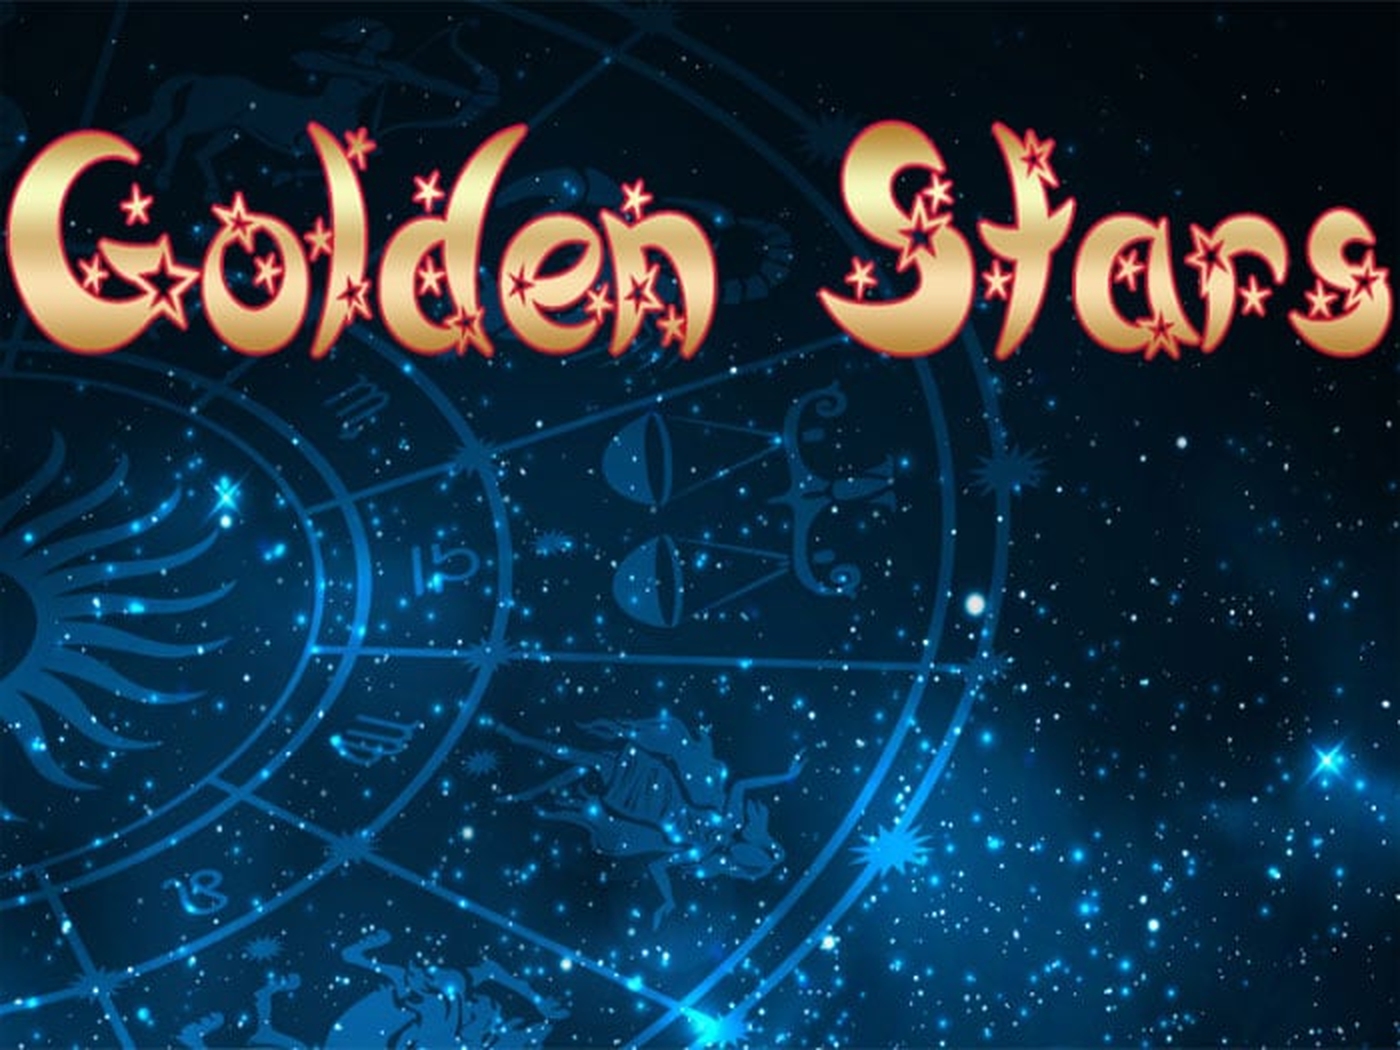 Golden Stars demo